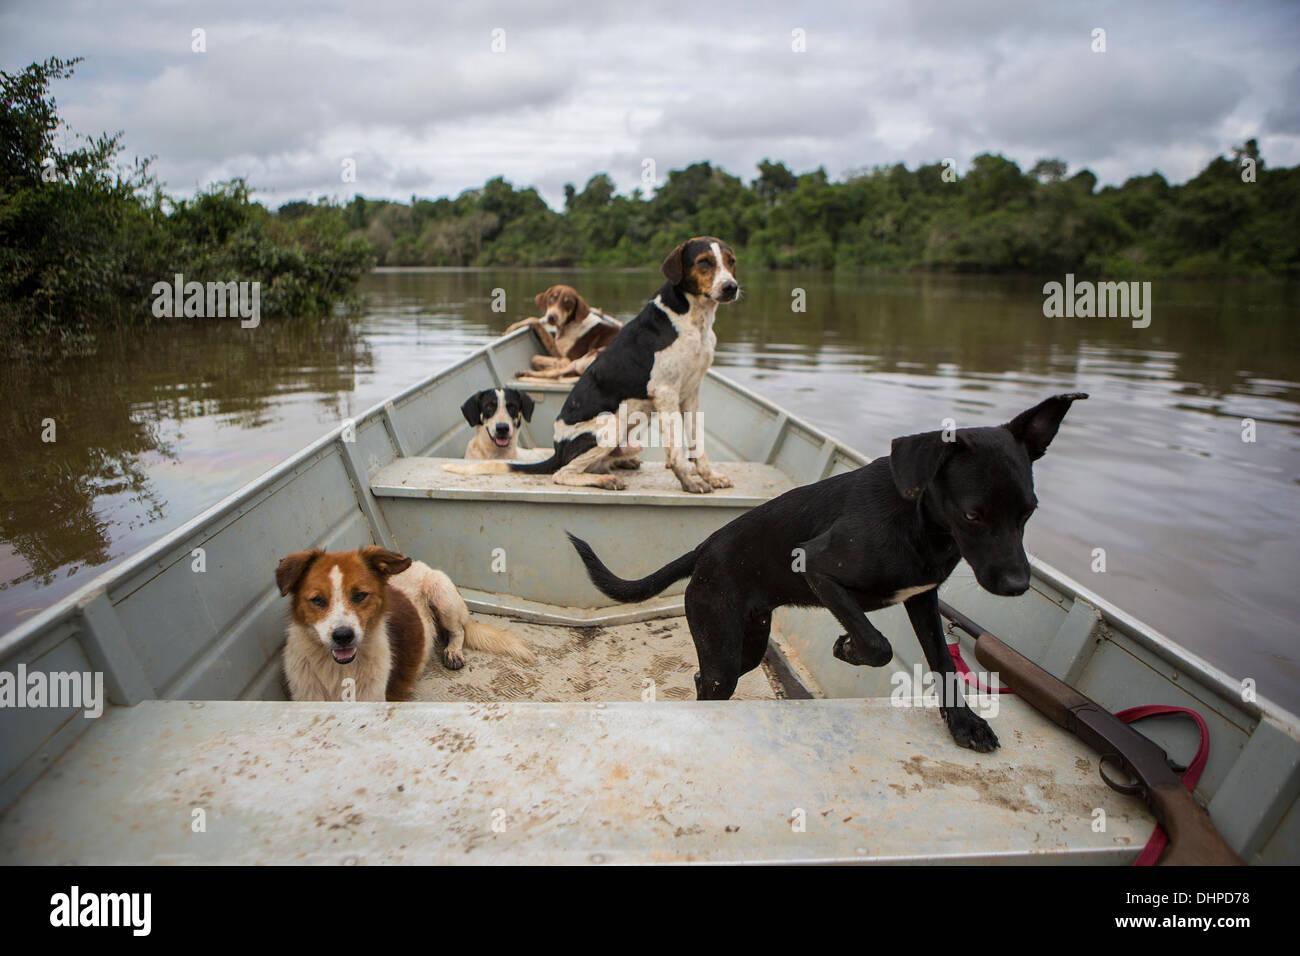 Aprile 25, 2013 - Poti-Kro, Para, Brasile - Xikrin uomini assumono spesso village cani da caccia. I cani guida per sciacquare fuori gioco come acciuffato pecari (un tipo di maiale selvatico) e tapiro. Gli indigeni Xikrin persone vivono sul Bacaja, un affluente del fiume Xingu, dove la costruzione di Belo Monte Dam raggiungendo il picco di costruzione. Alcuni scienziati avvertono che il livello di acqua dell'Bacaja diminuiscono precipitosamente a causa della diga. (Credito Immagine: © Taylor Weidman/ZUMA filo/ZUMAPRESS.com) Foto Stock